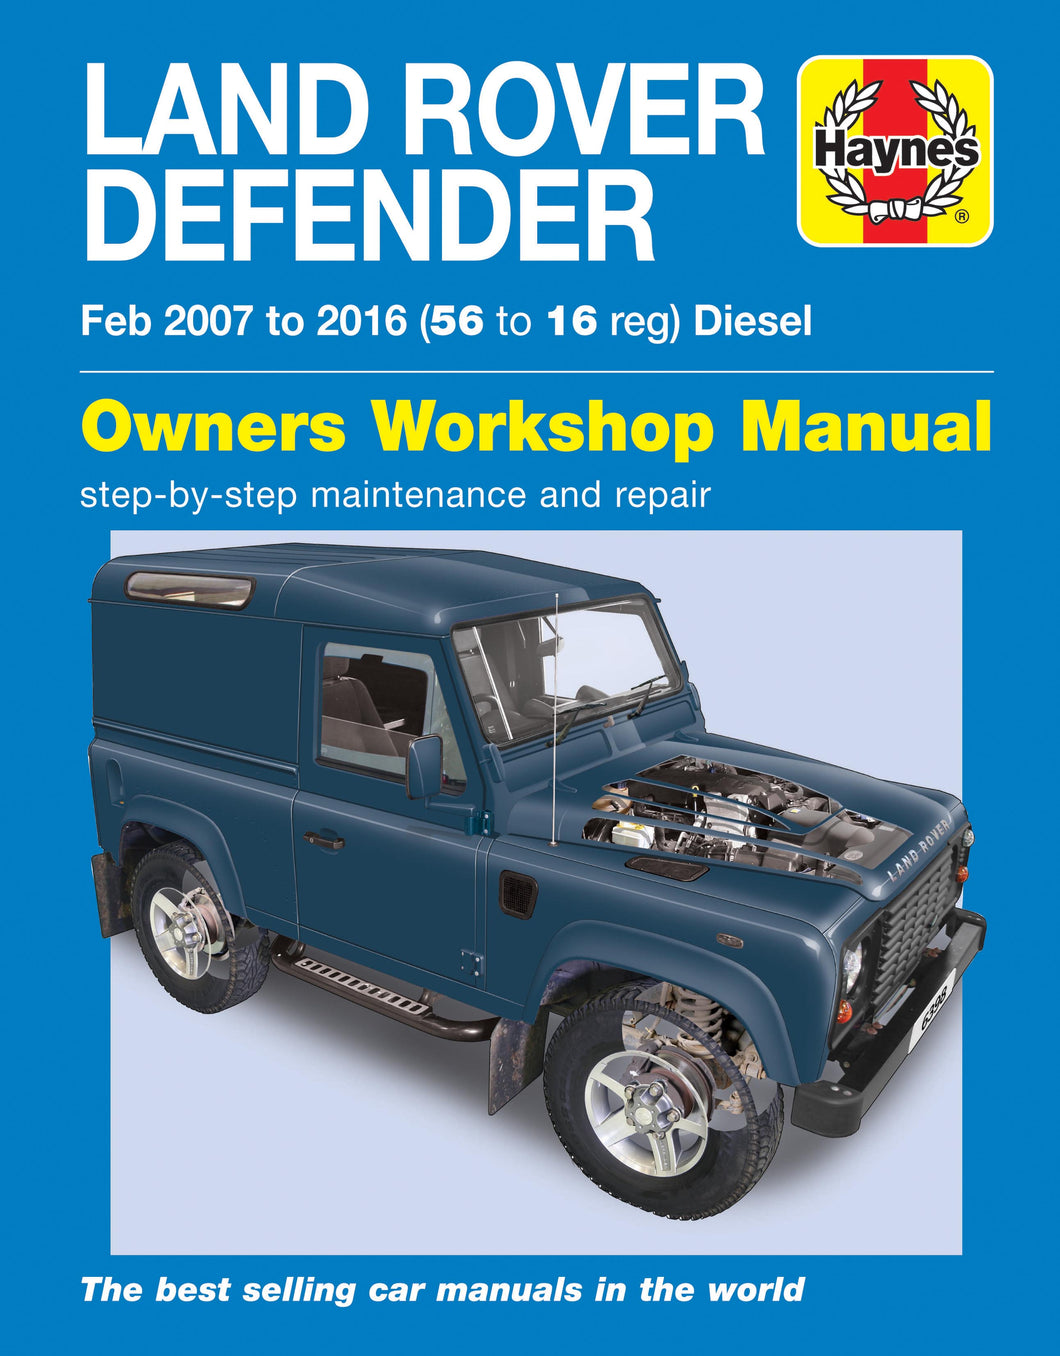 Land Rover Defender Diesel (Feb 07 - 16) 56 to 16 Haynes Repair Manual